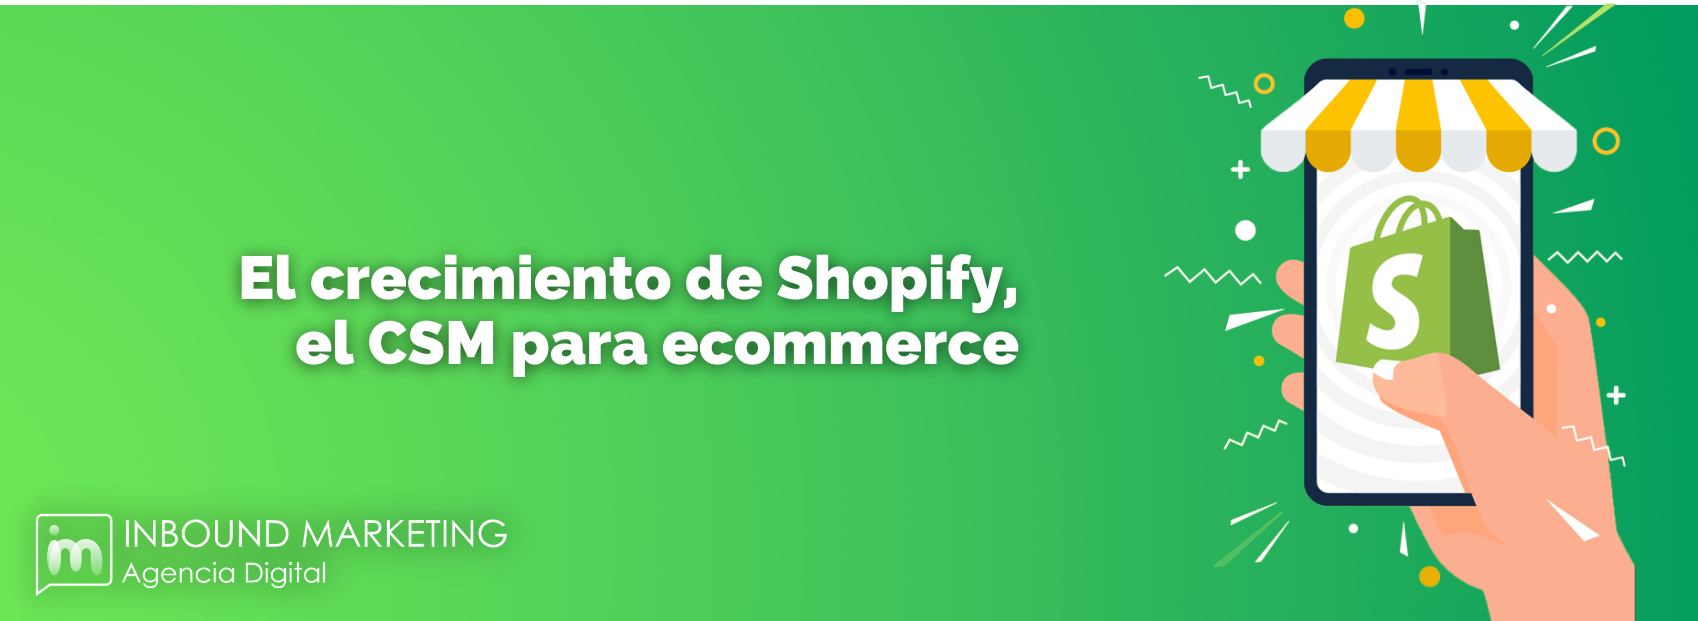 El crecimiento de Shopify, el CMS para ecommerce.